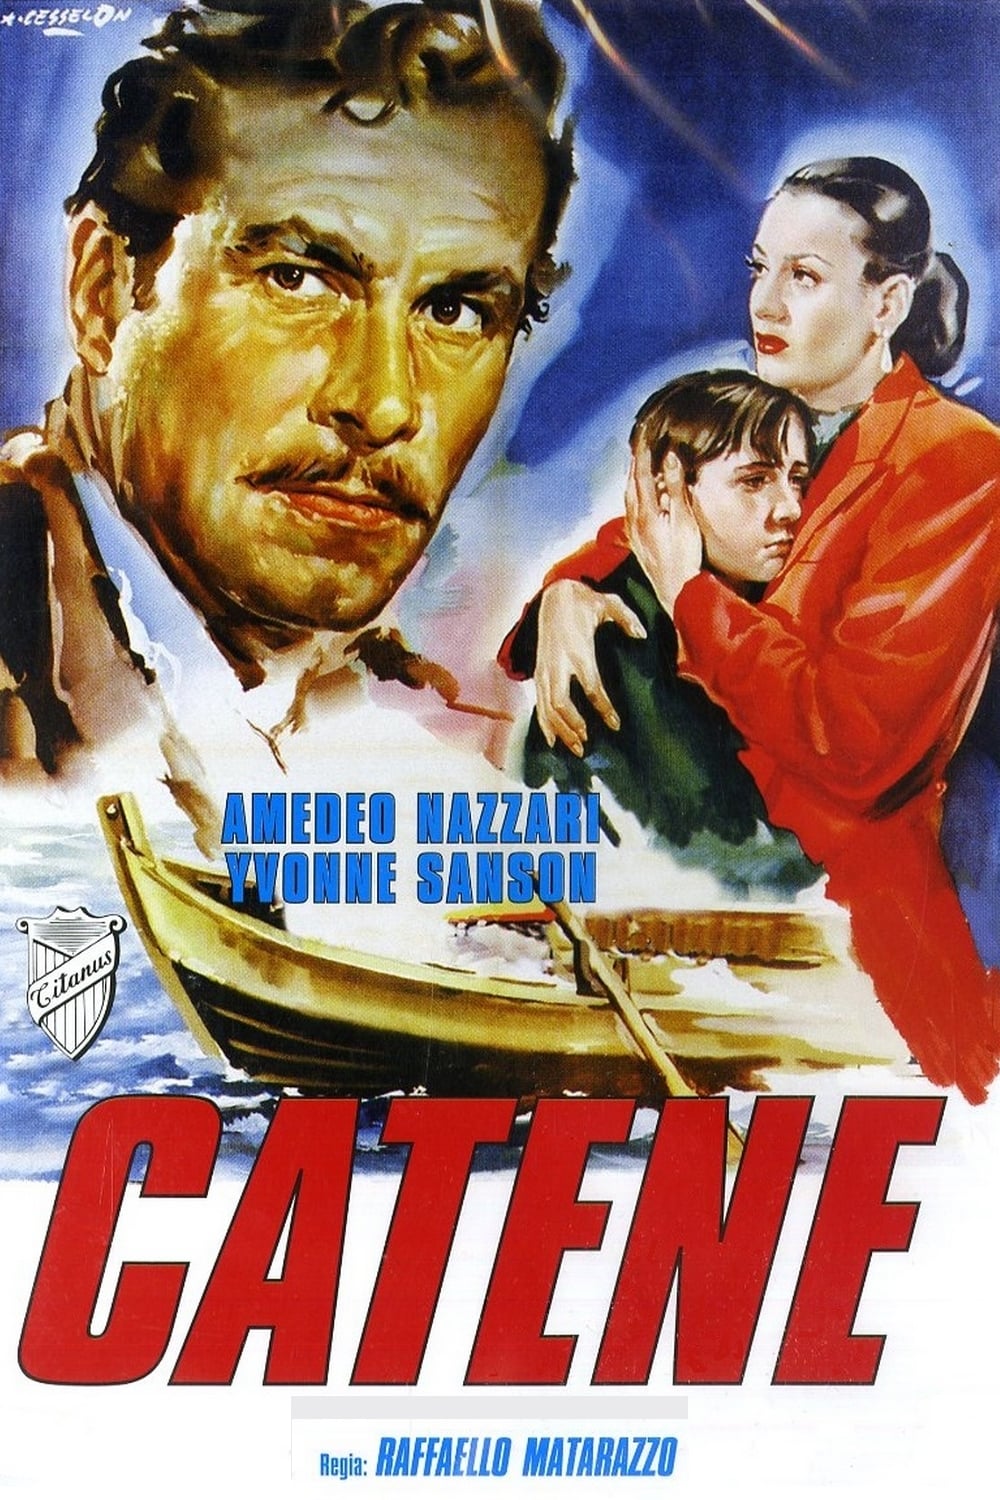 Chains (1949)